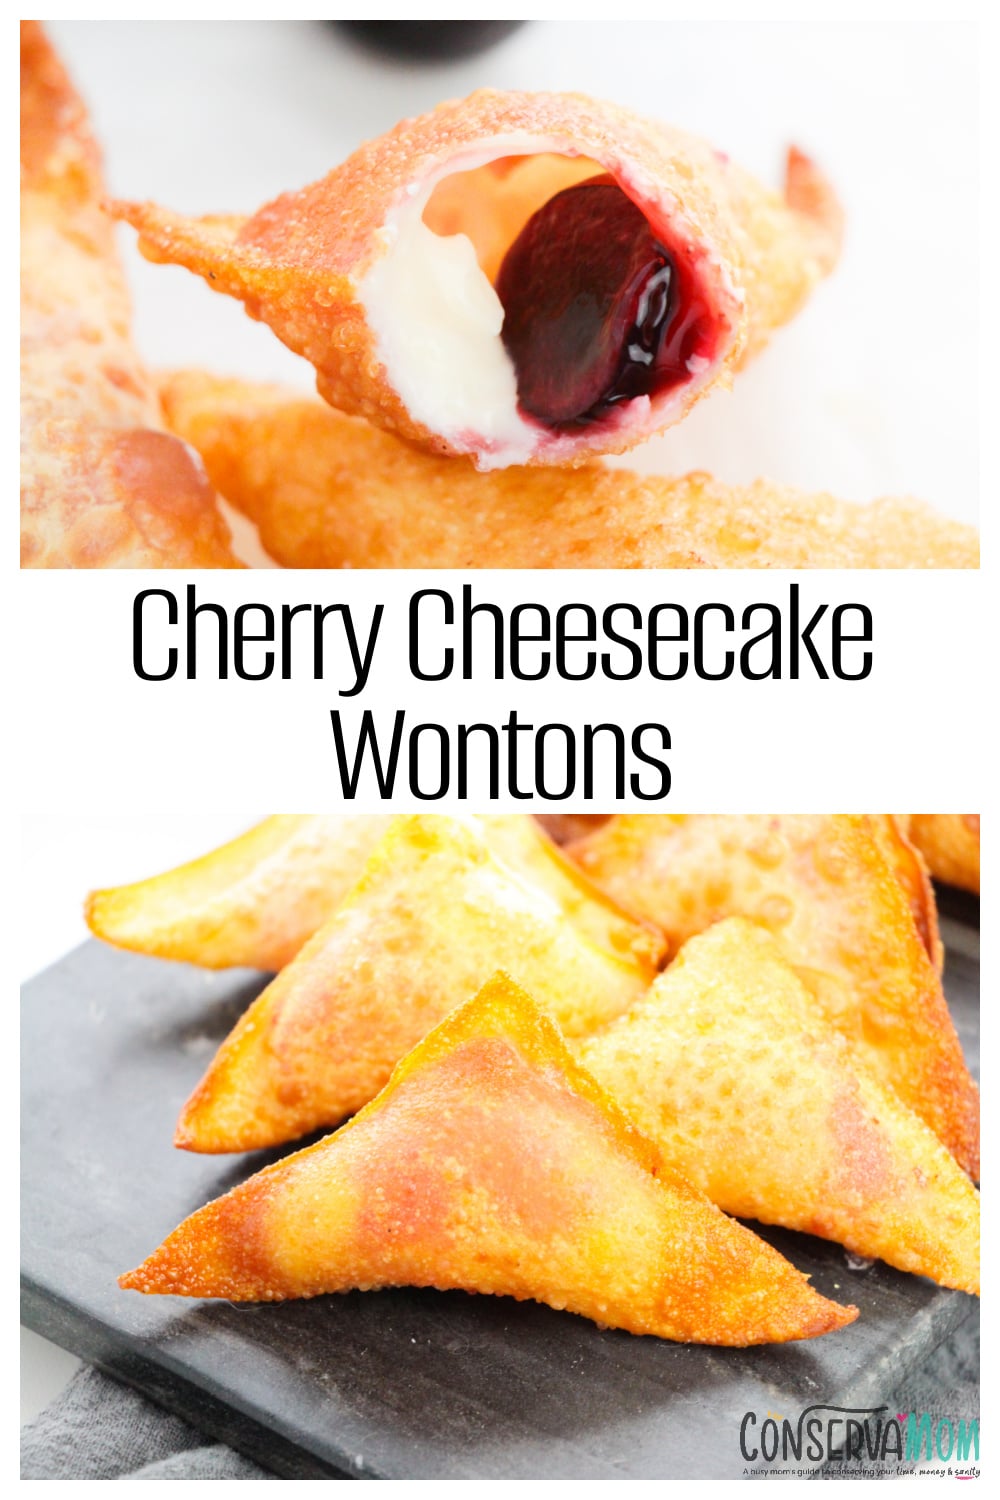 Cherry Cheesecake Wontons